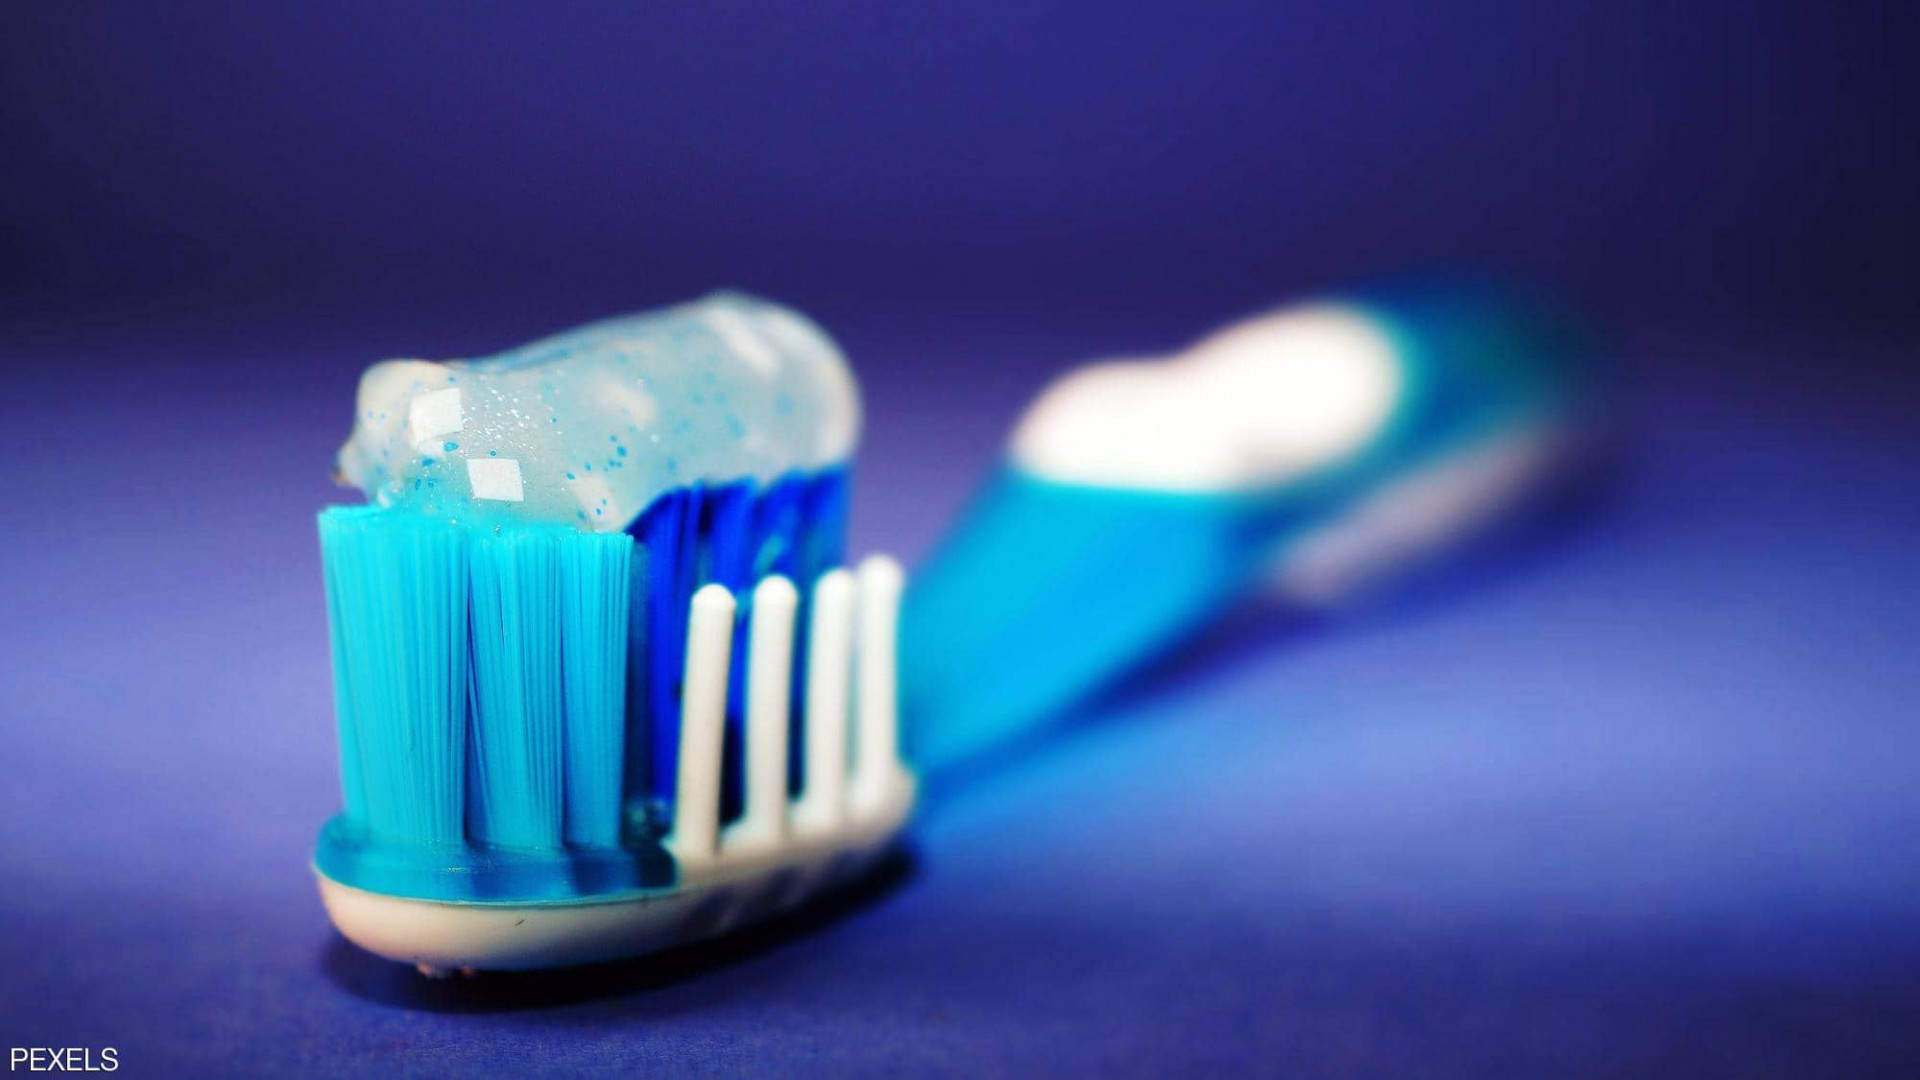 سنوات من الاعتقاد الخاطئ.. كيف نستخدم معجون الأسنان؟